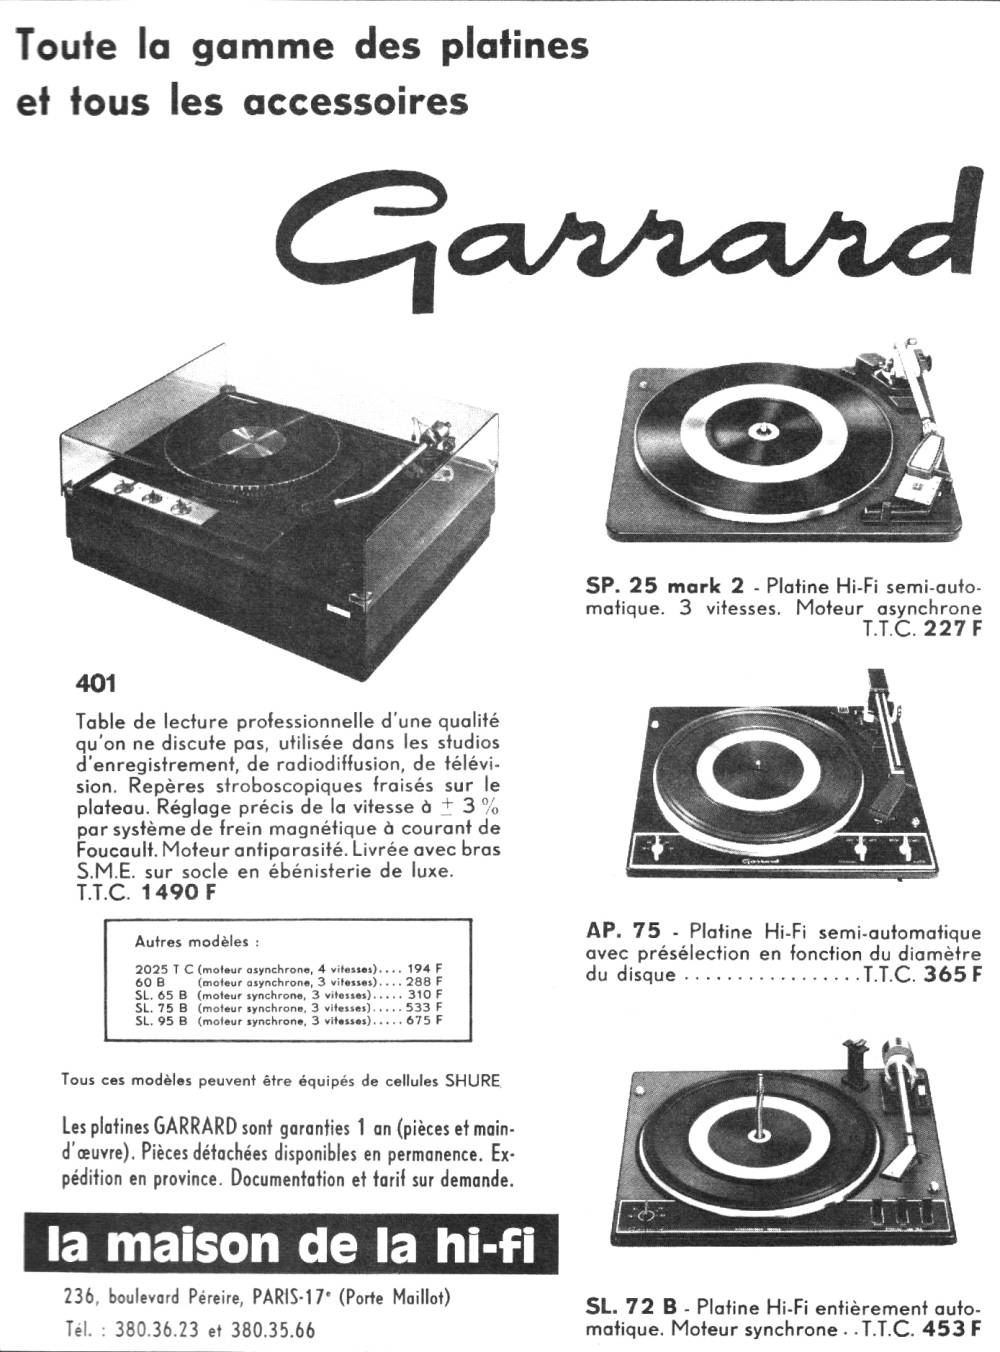 Garrard - Pub.jpg